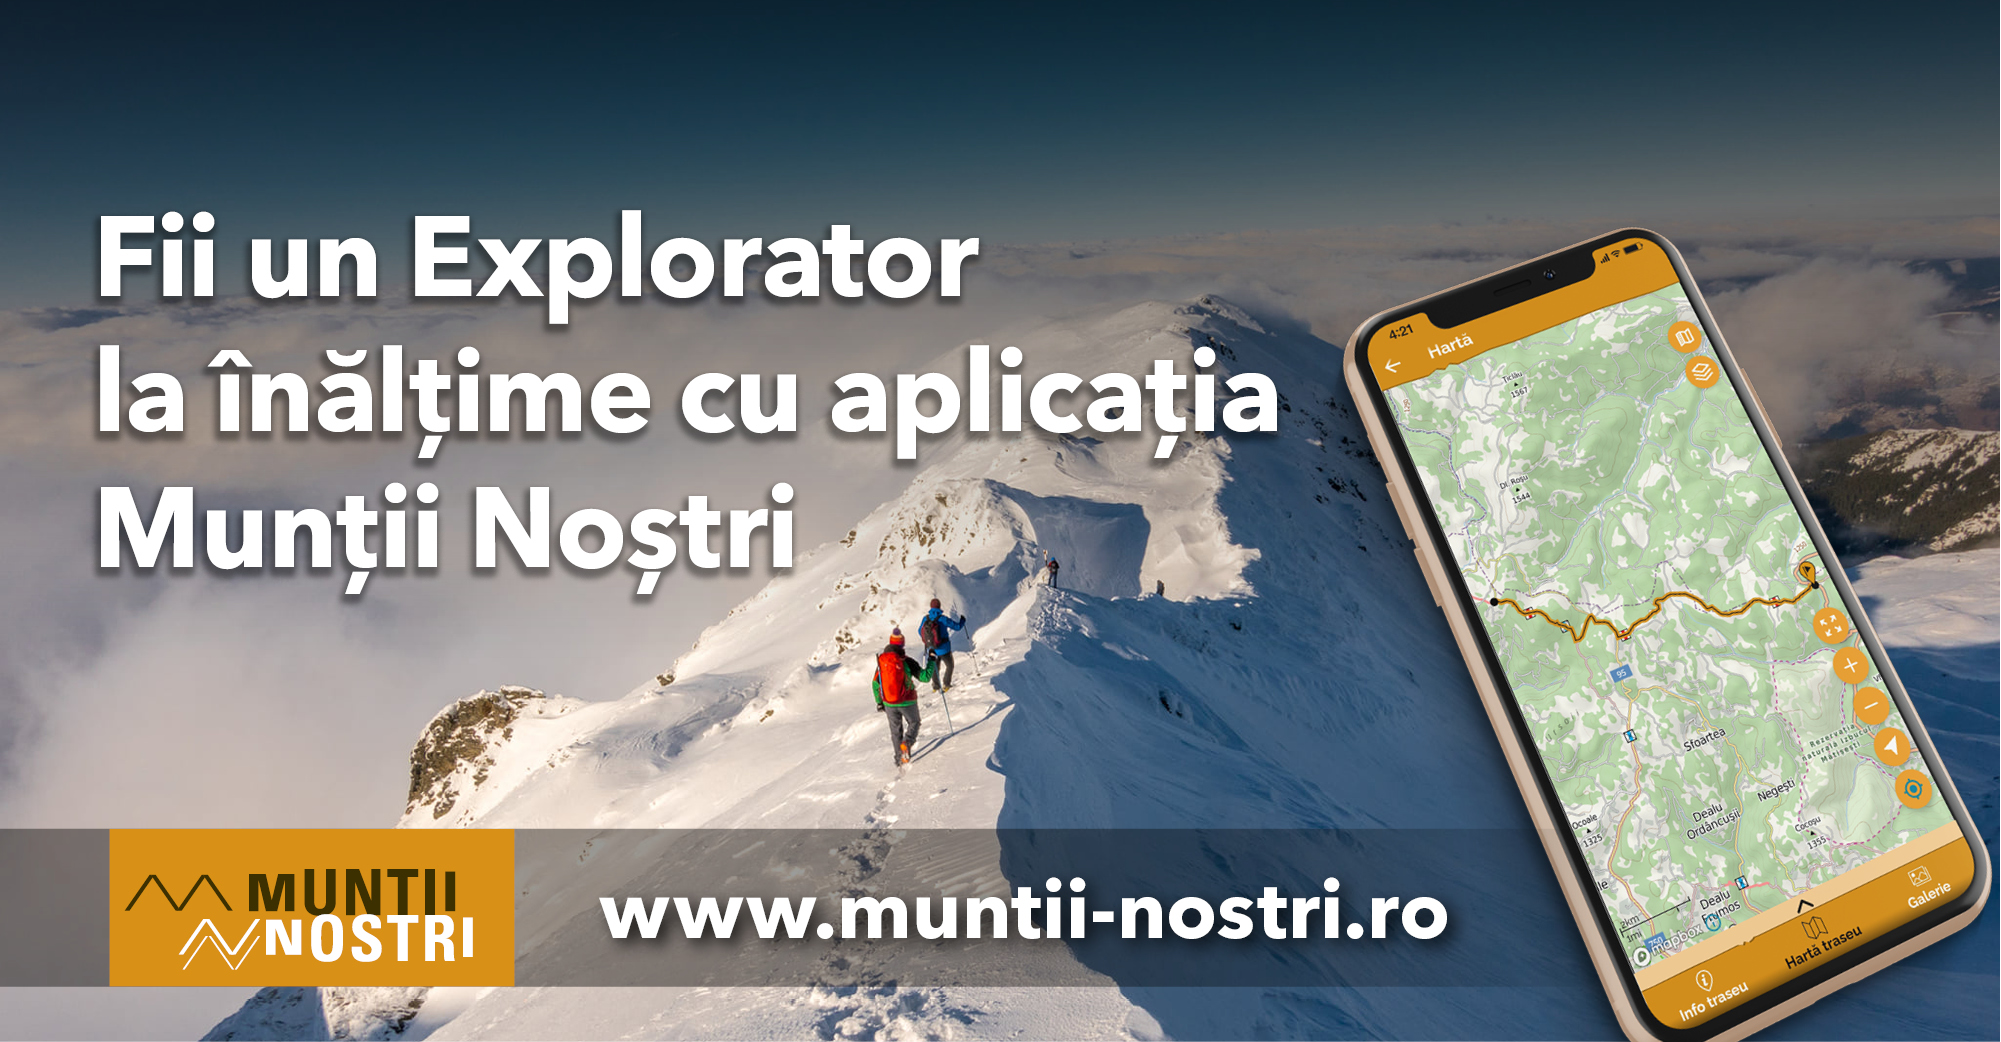  Fii un Explorator cu aplicația Munții Noștri